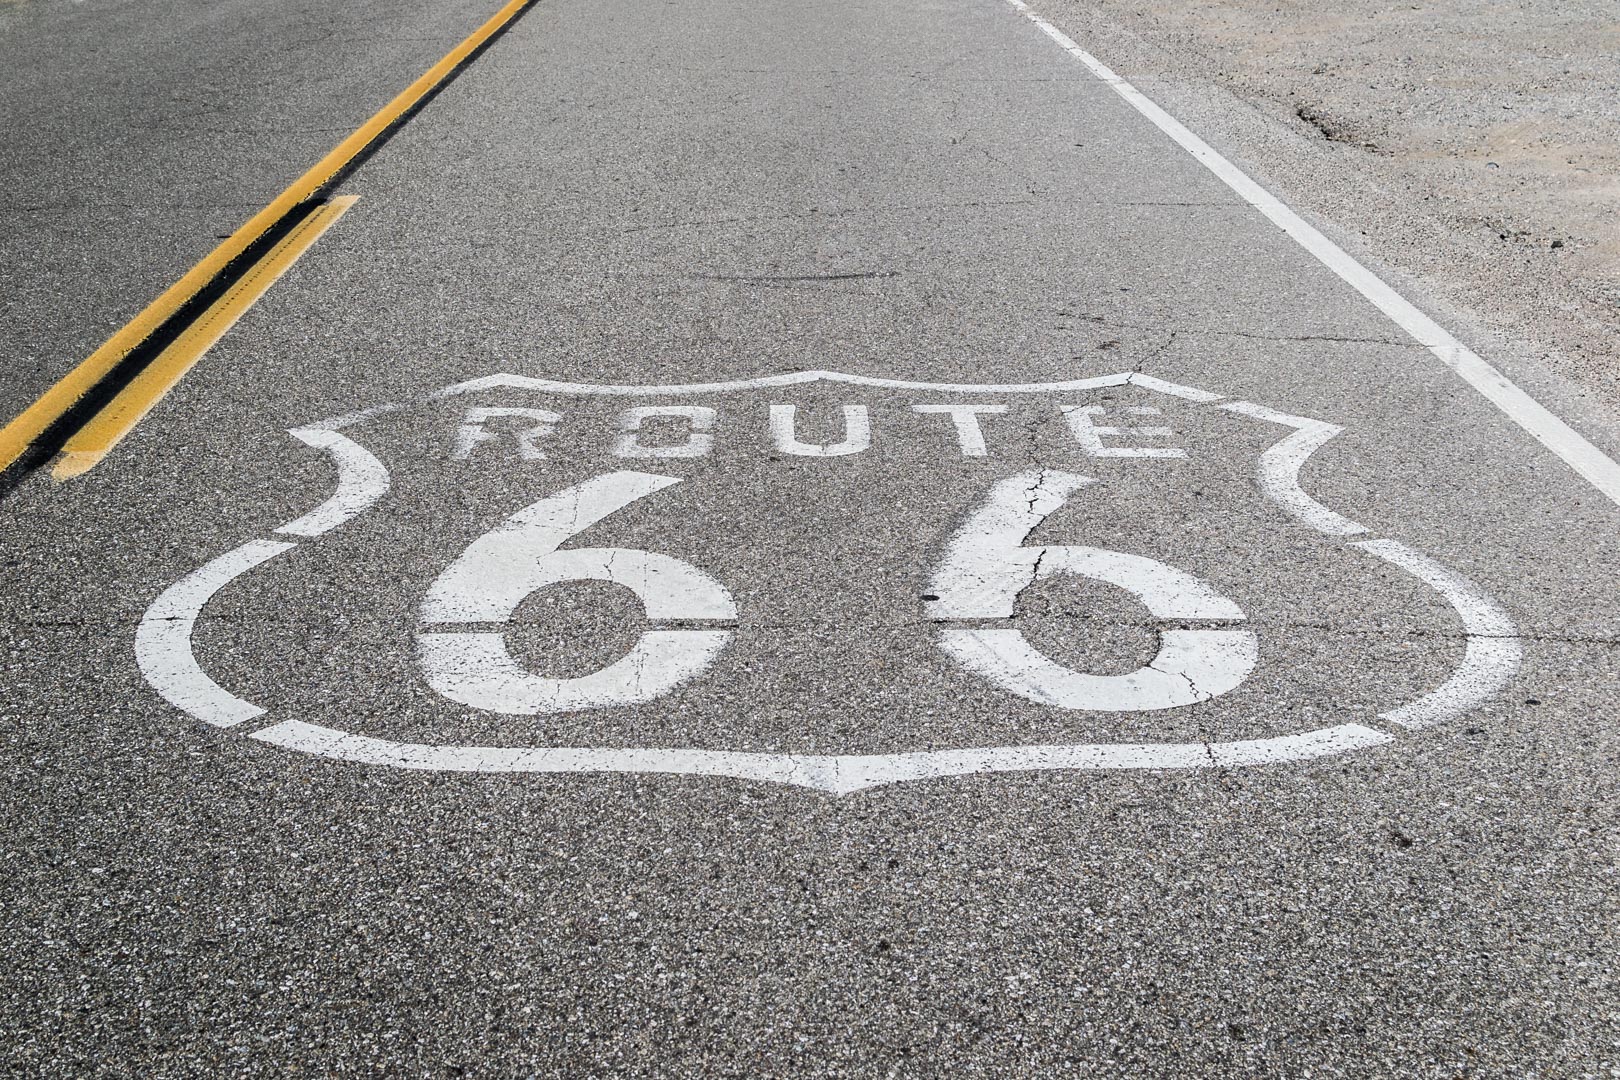 La mythique Route 66 ! Difficile de passer à côté